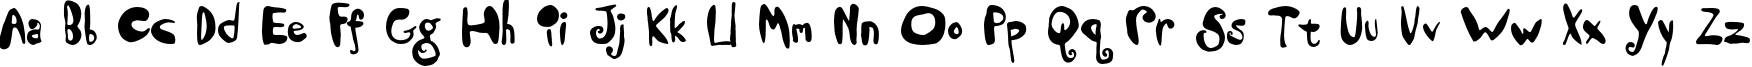 Пример написания английского алфавита шрифтом Dandelion